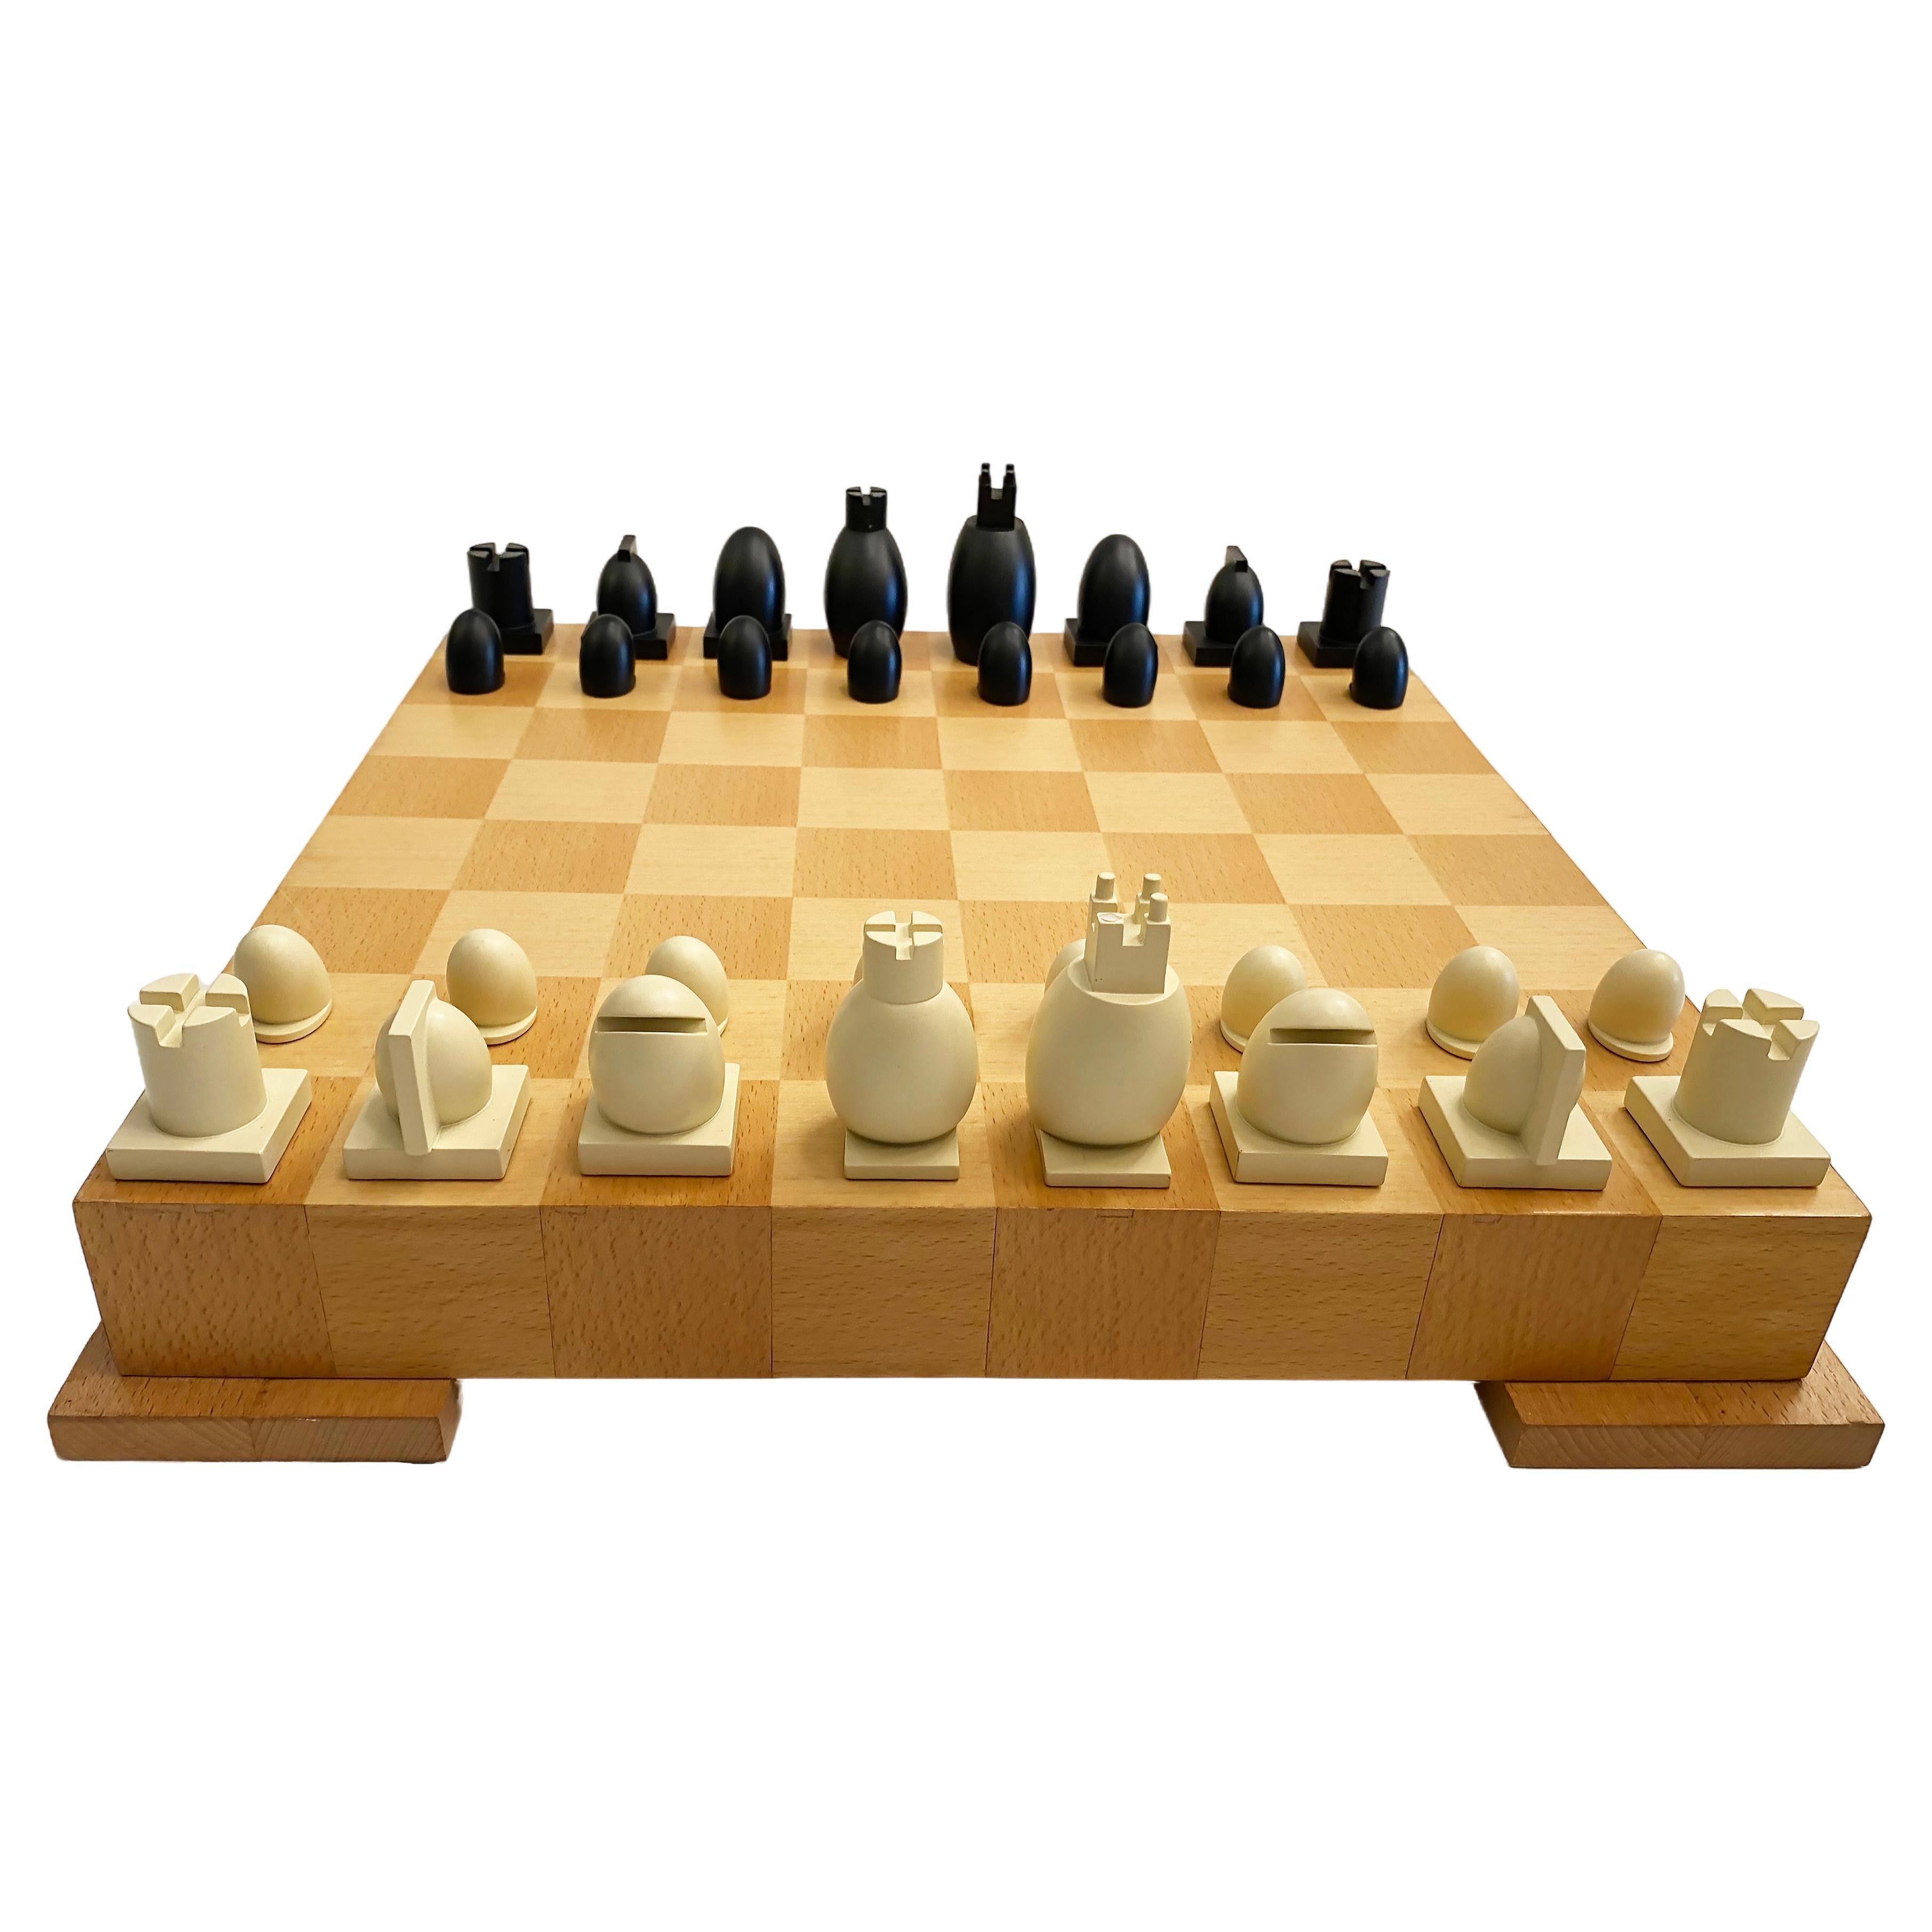 Michael Graves Postmodernes Schach / Dame Set Brettspiel und Pieces